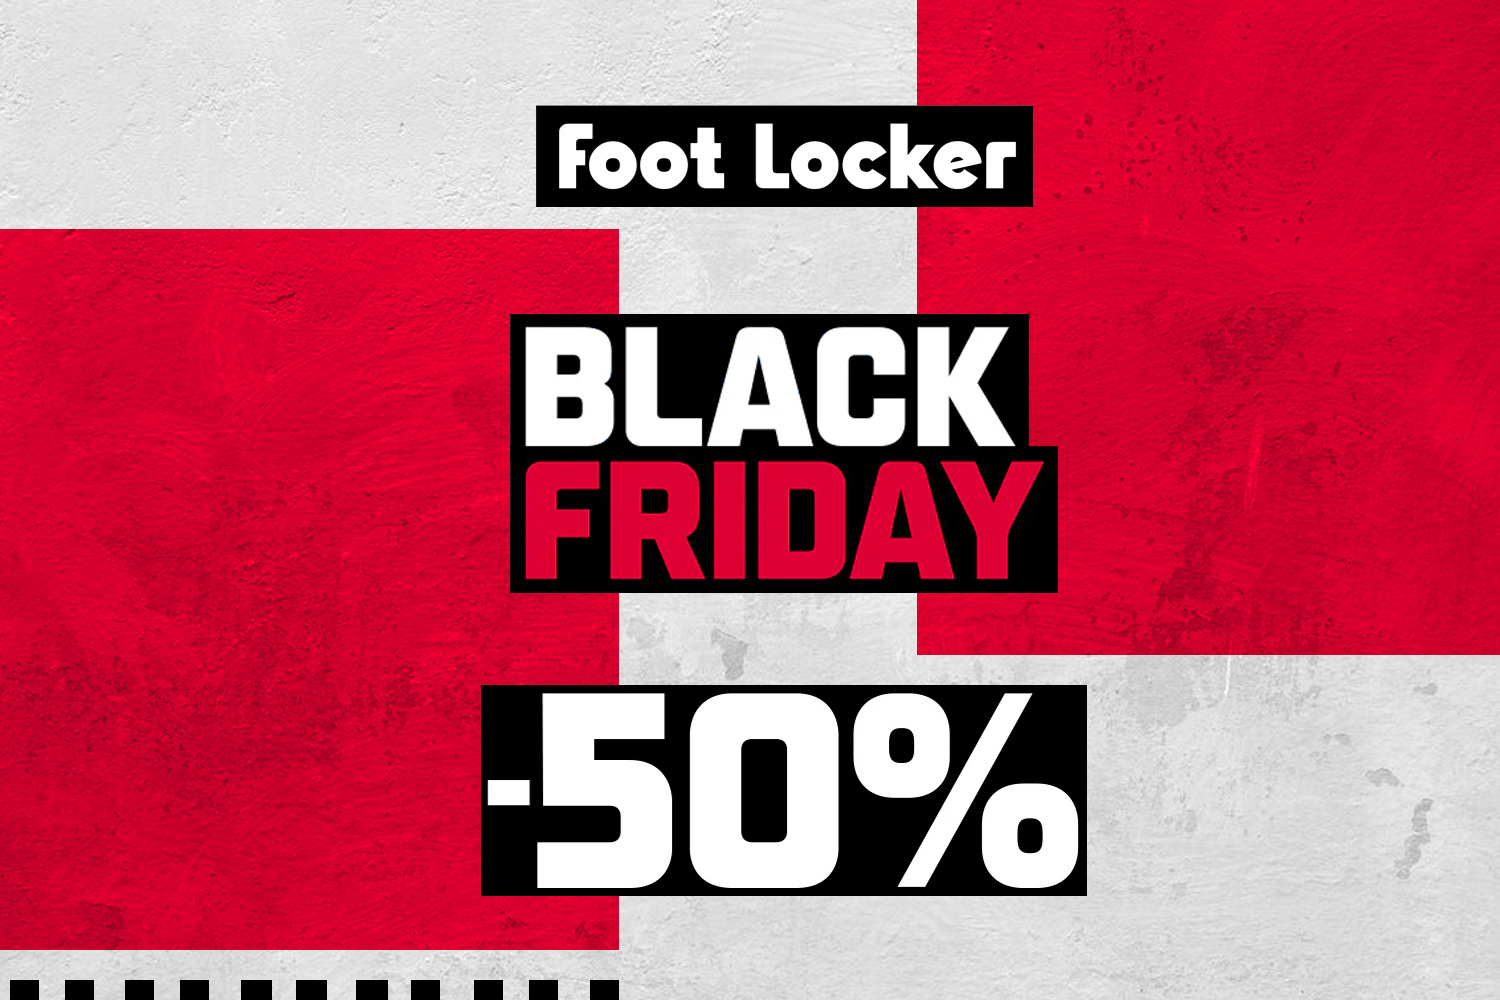 Onze favoriete deals uit de Black Friday sale van Foot Locker